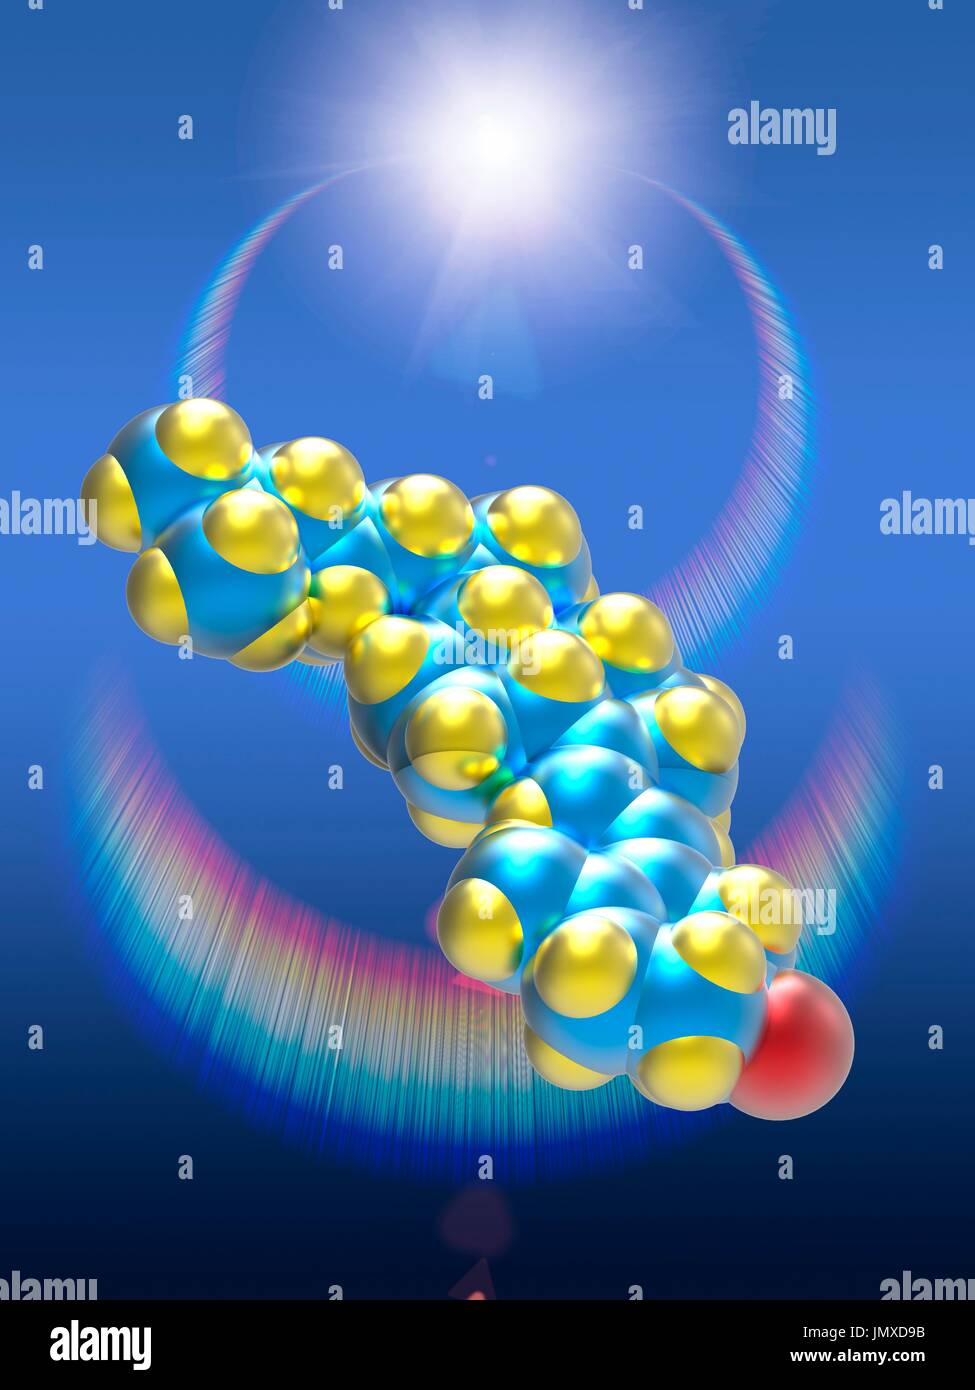 Ein molekulares Modell des Vitamin D3 (Cholecalciferol), eine Form von Vitamin D in der Haut durch UV-B-Licht synthetisiert. Vitamin D3 spielt eine Rolle bei Calcium-Resorption zur Erhaltung starker Knochen und Ebenen von Kalzium und Phosphor im Blut zu balancieren. Atome sind farbige blau (Kohlenstoff), gelb (Wasserstoff) und rot (Sauerstoff). Im Hintergrund eine Sonne flare mit chromatischen Reflexionen. Stockfoto